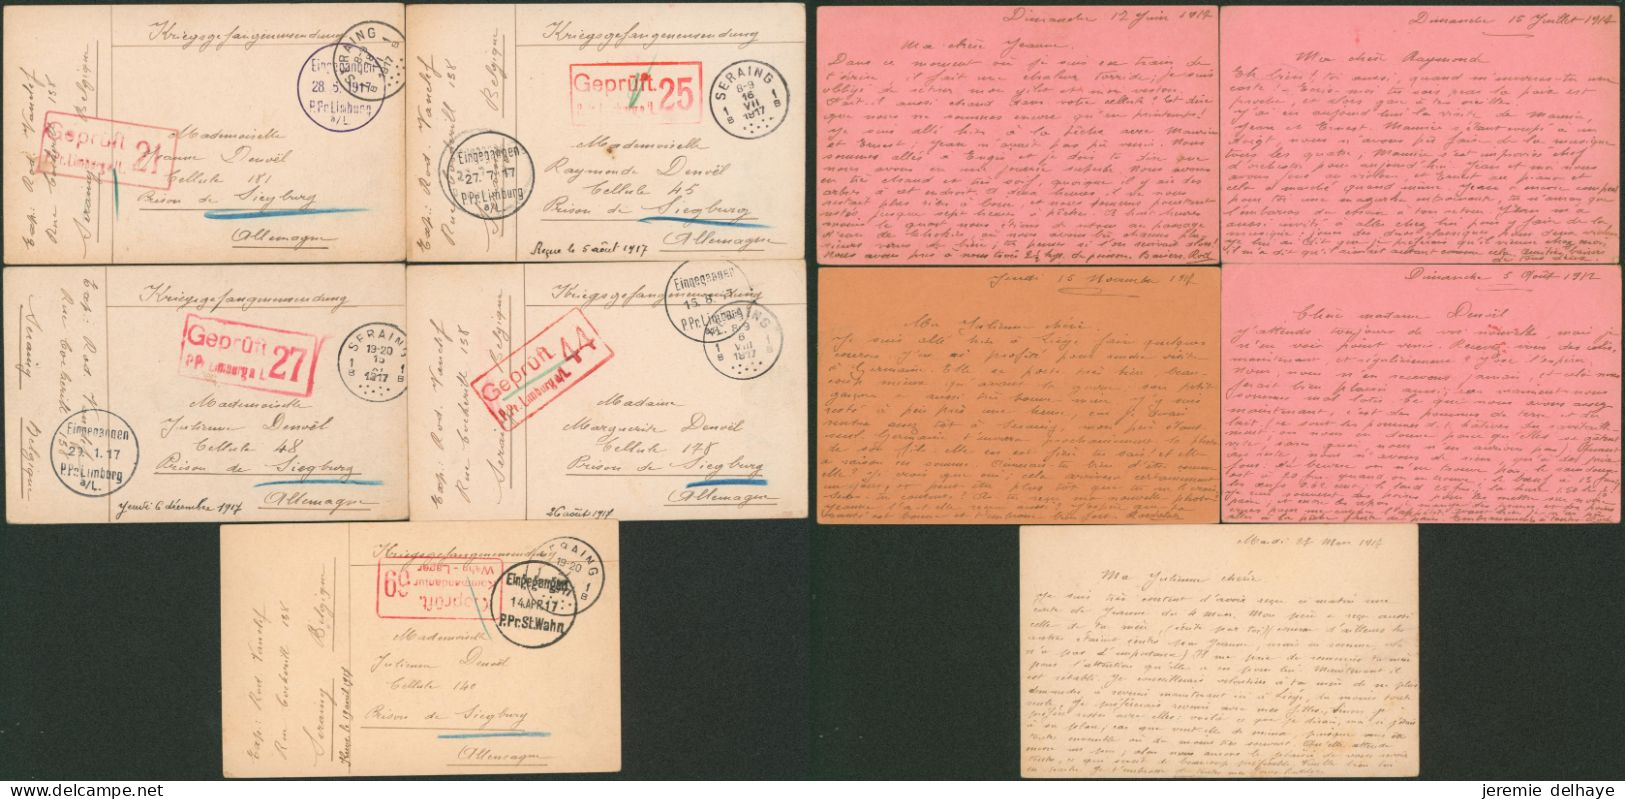 Guerre 14-18 - Archive De 5 Documents De Seraing (1917) > Prison De Siegburg + Censure Différente. - Prisoners